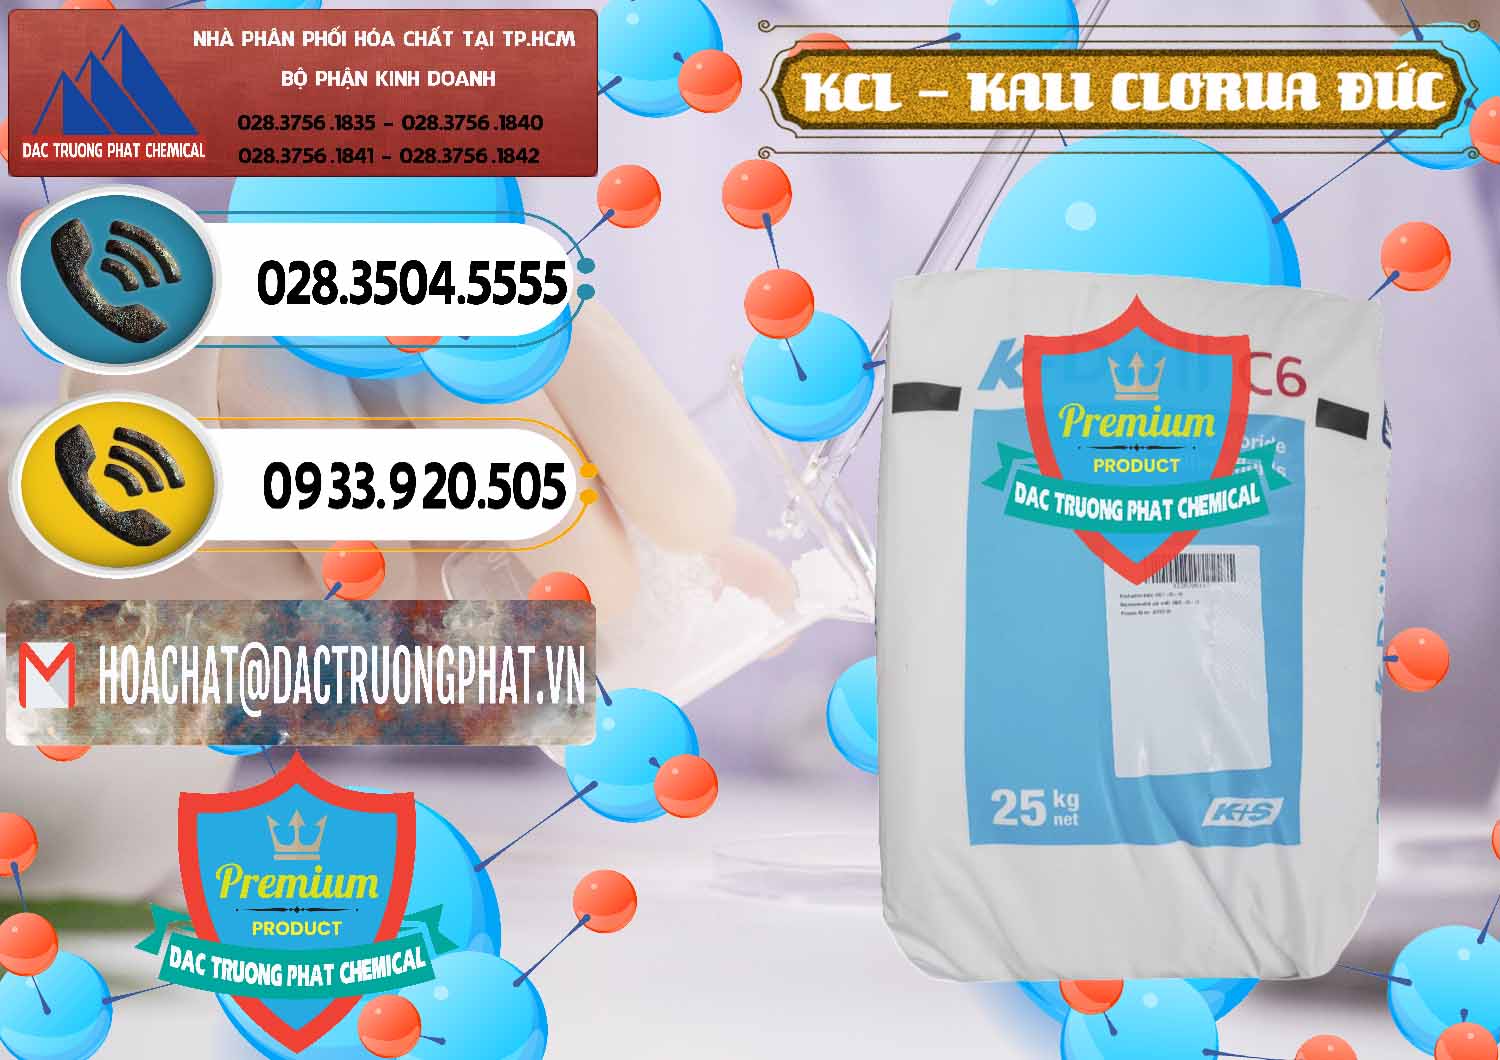 Nơi chuyên nhập khẩu - bán KCL – Kali Clorua Trắng K DRILL Đức Germany - 0428 - Nhà nhập khẩu _ phân phối hóa chất tại TP.HCM - hoachatdetnhuom.vn